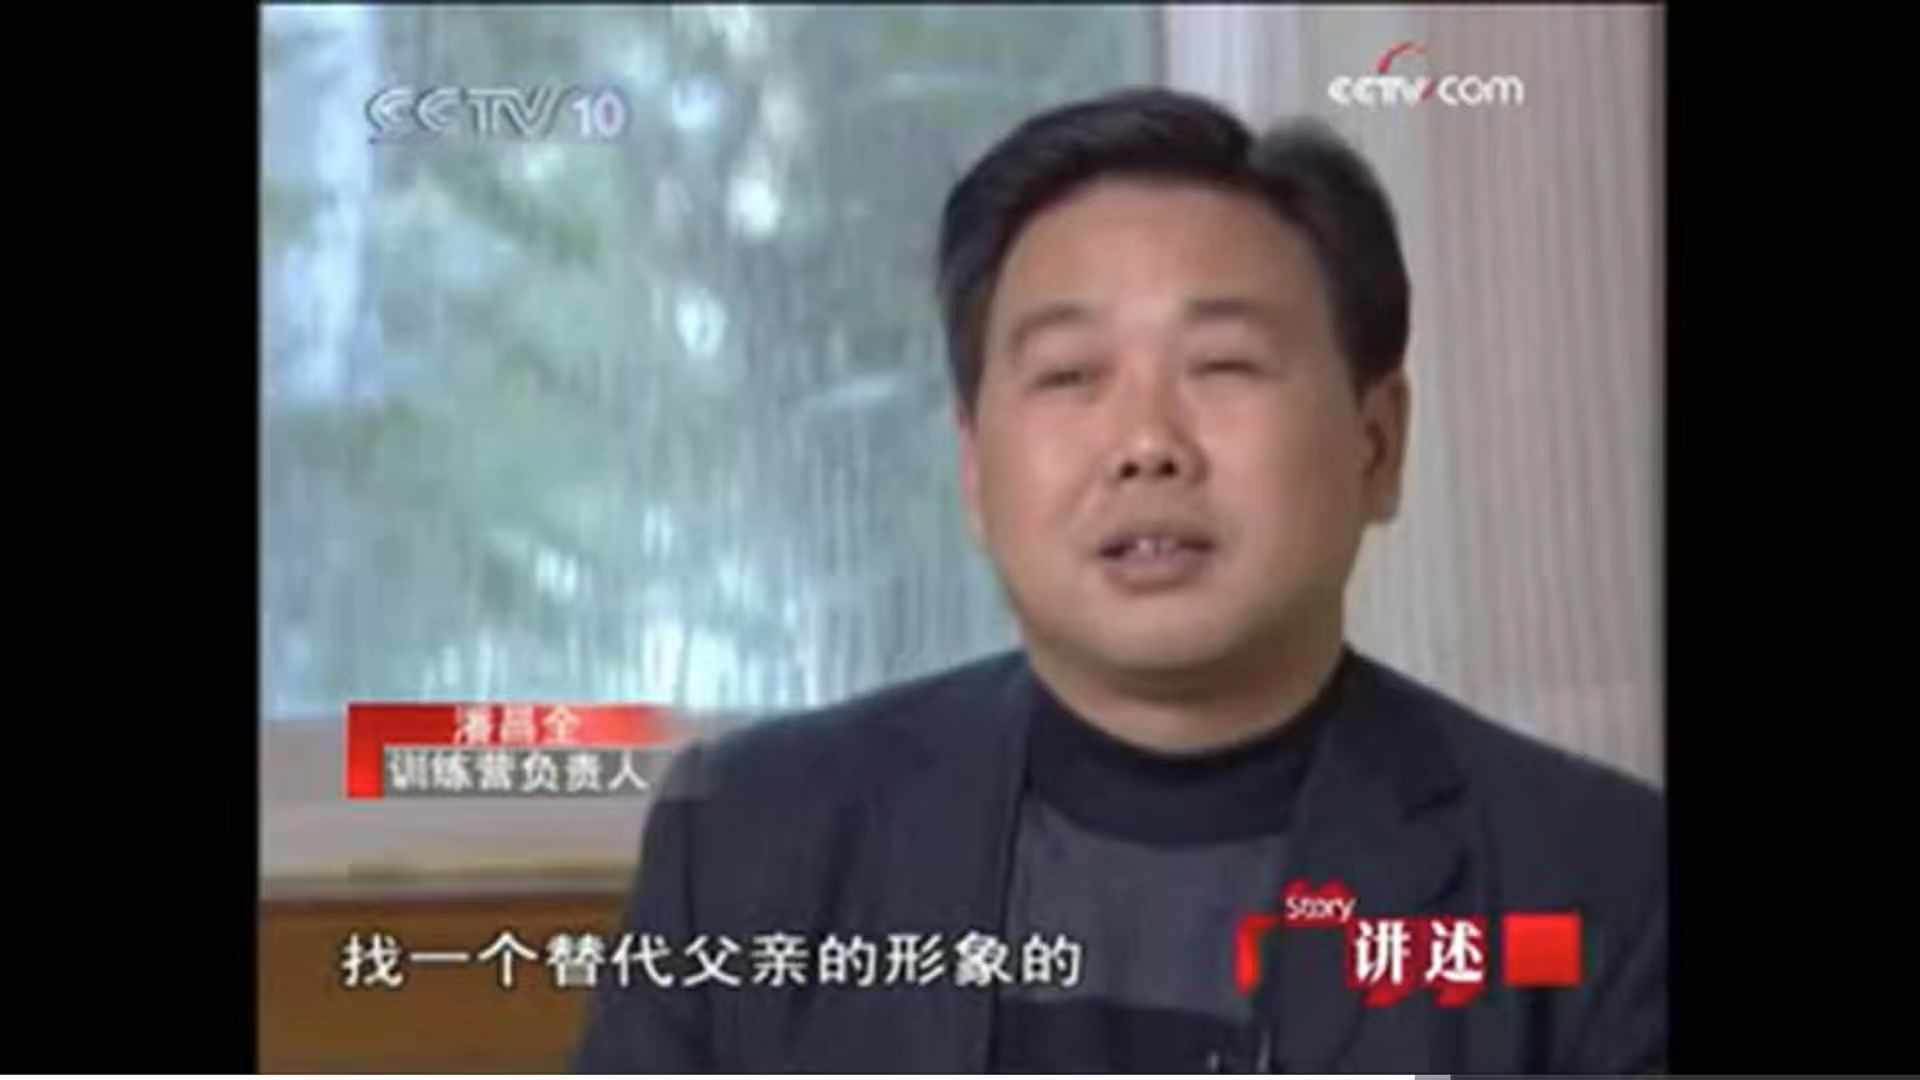 ▲嘉年华“校长”曾接受媒体采访。图片源于网络